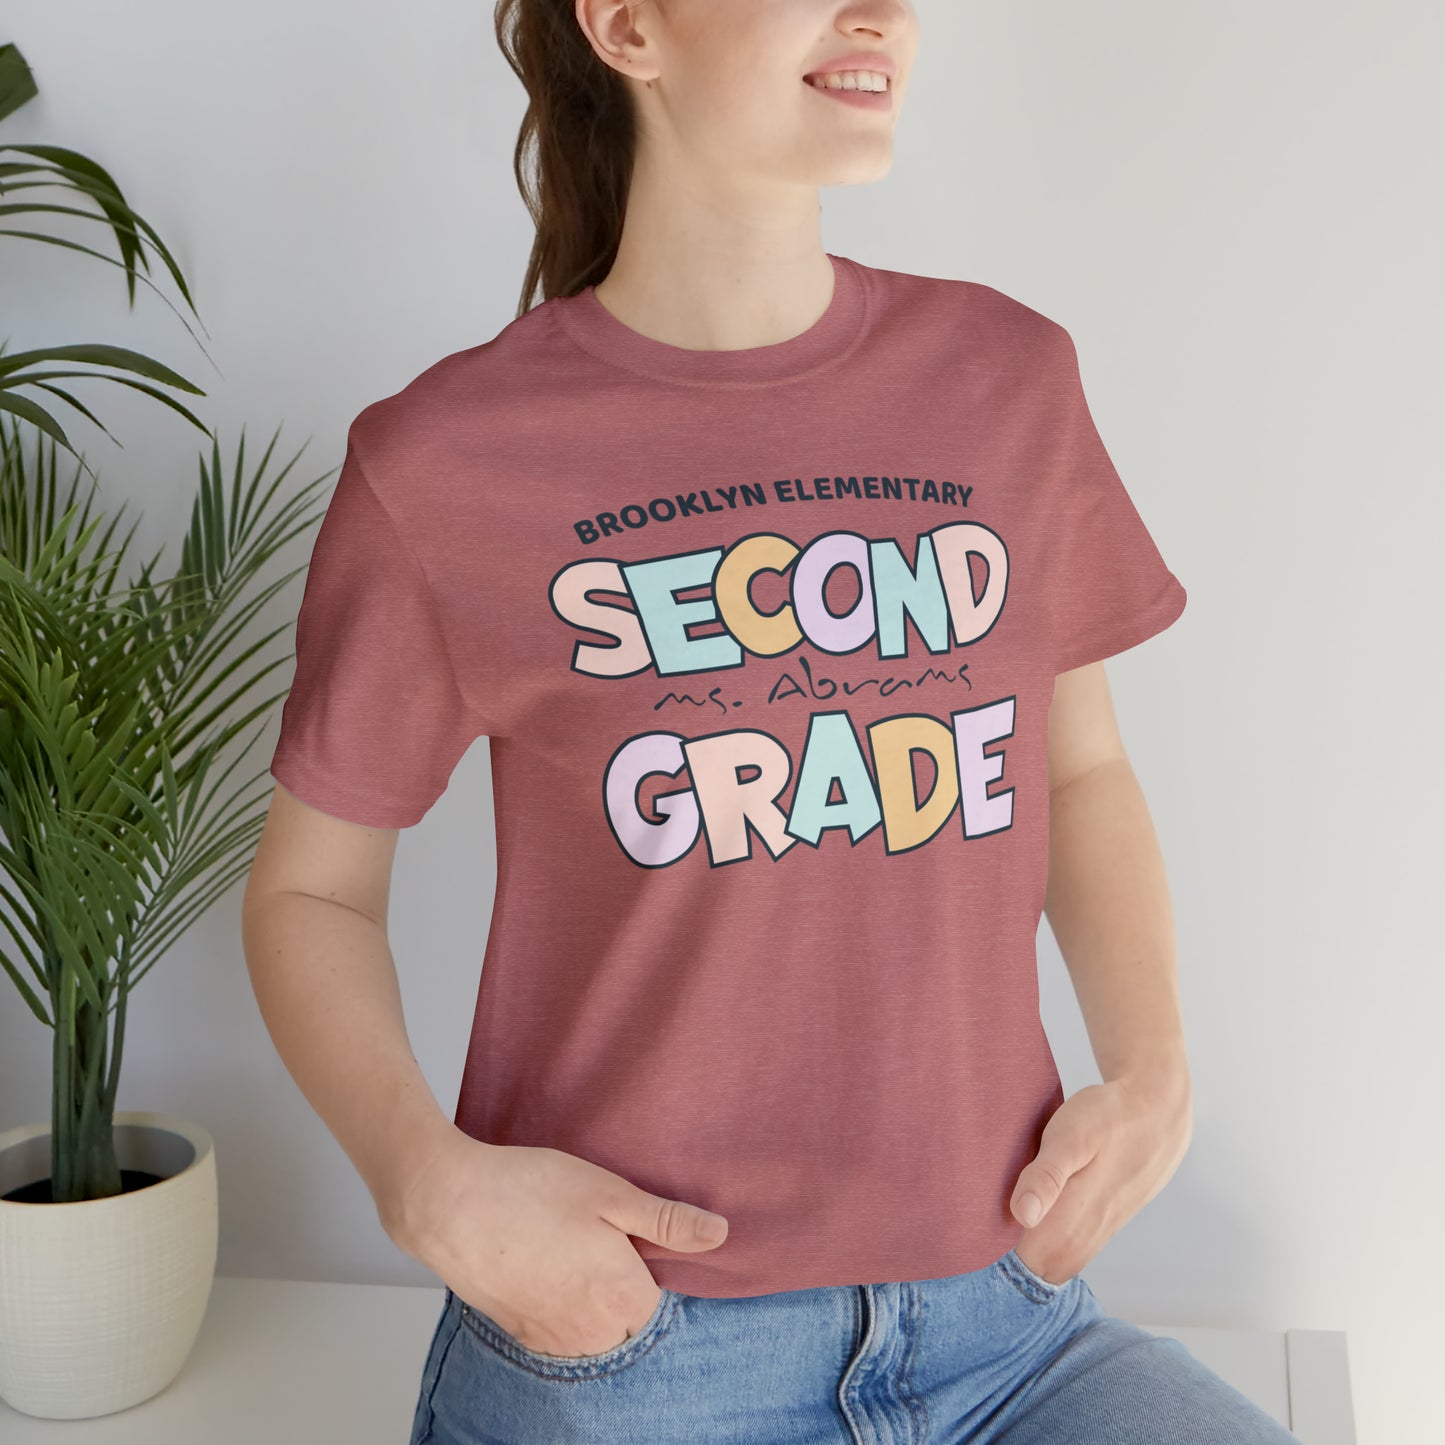 Second Grade Teacher Shirt, 2nd Grade Personalized Teacher and School Name Shirt